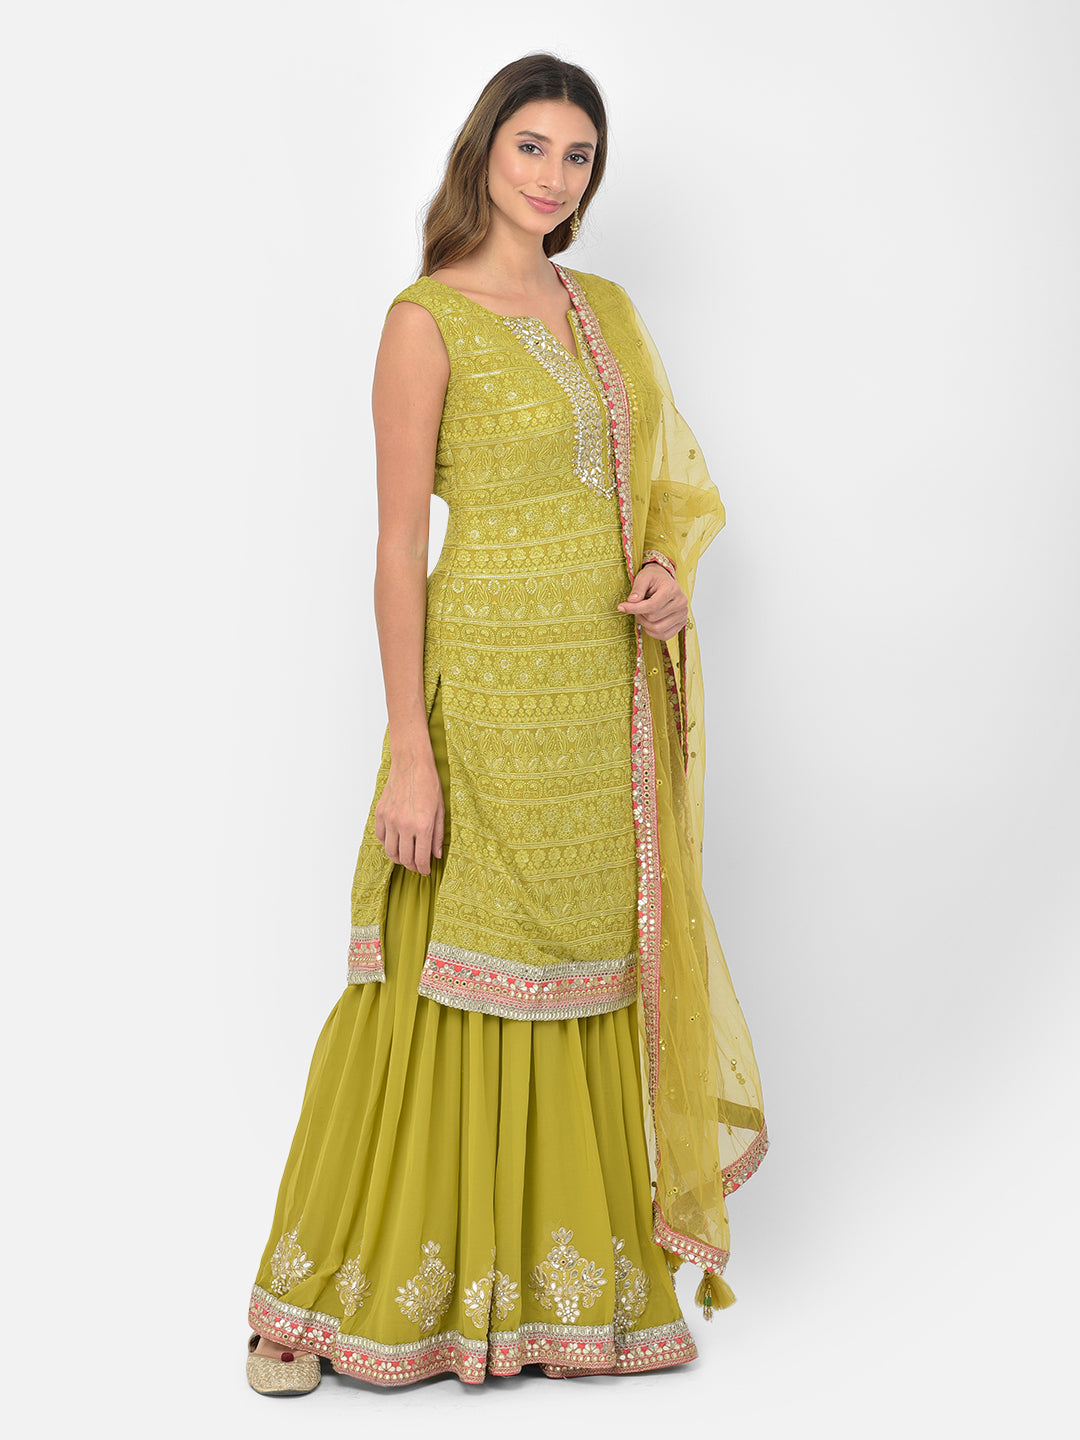 Neeru's green color georgette fabric salwar kameez